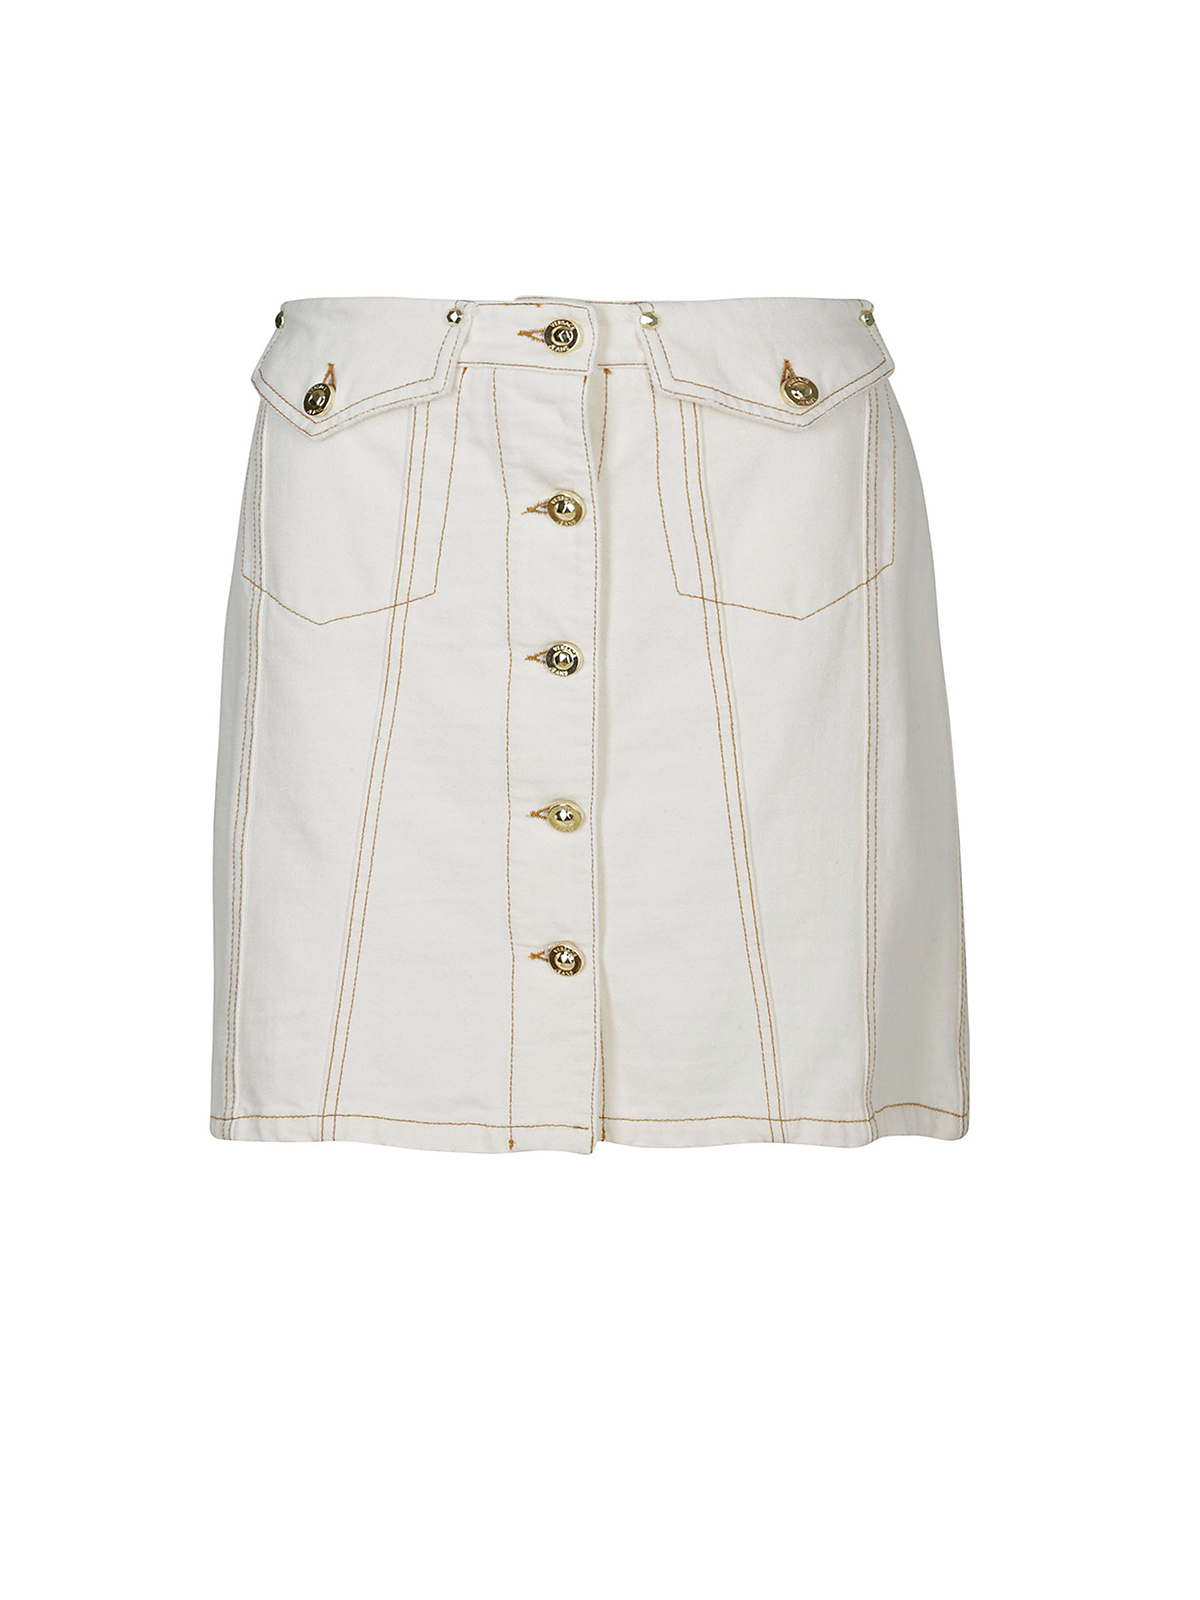 white denim mini skirt womens